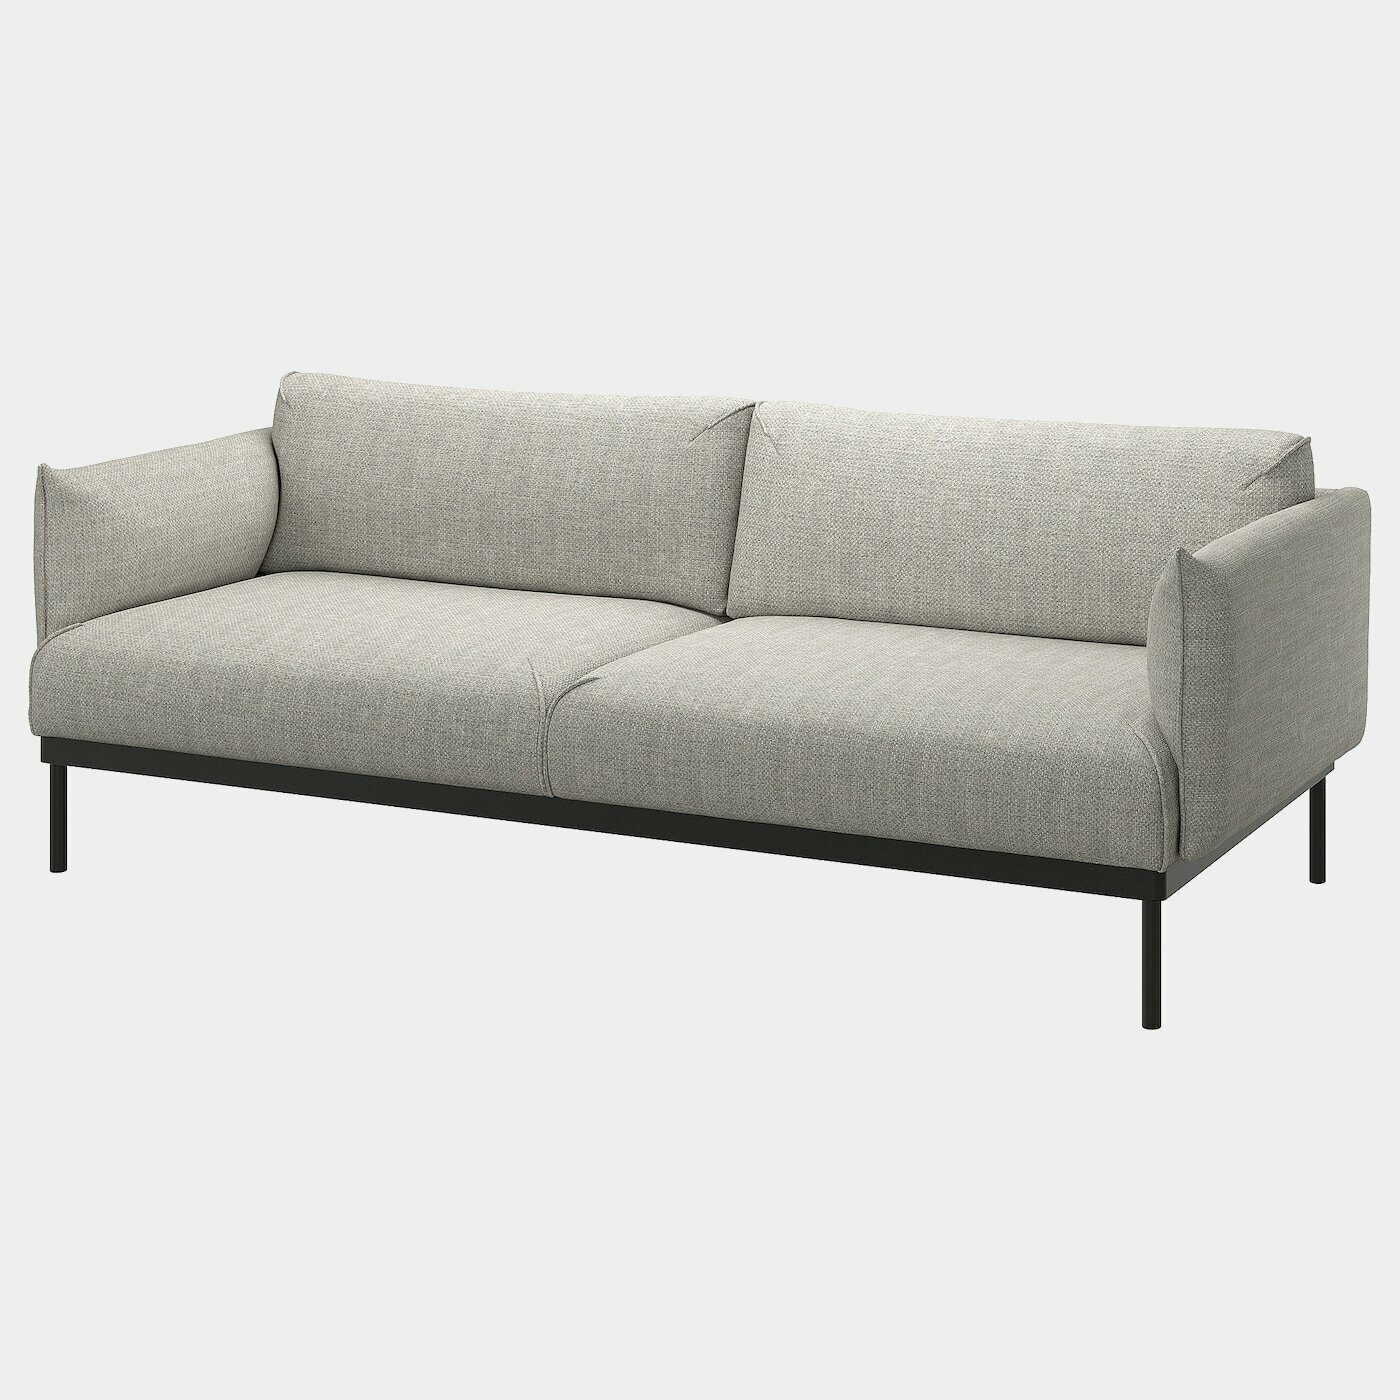 ÄPPLARYD 3er-Sofa  -  - Möbel Ideen für dein Zuhause von Home Trends. Möbel Trends von Social Media Influencer für dein Skandi Zuhause.